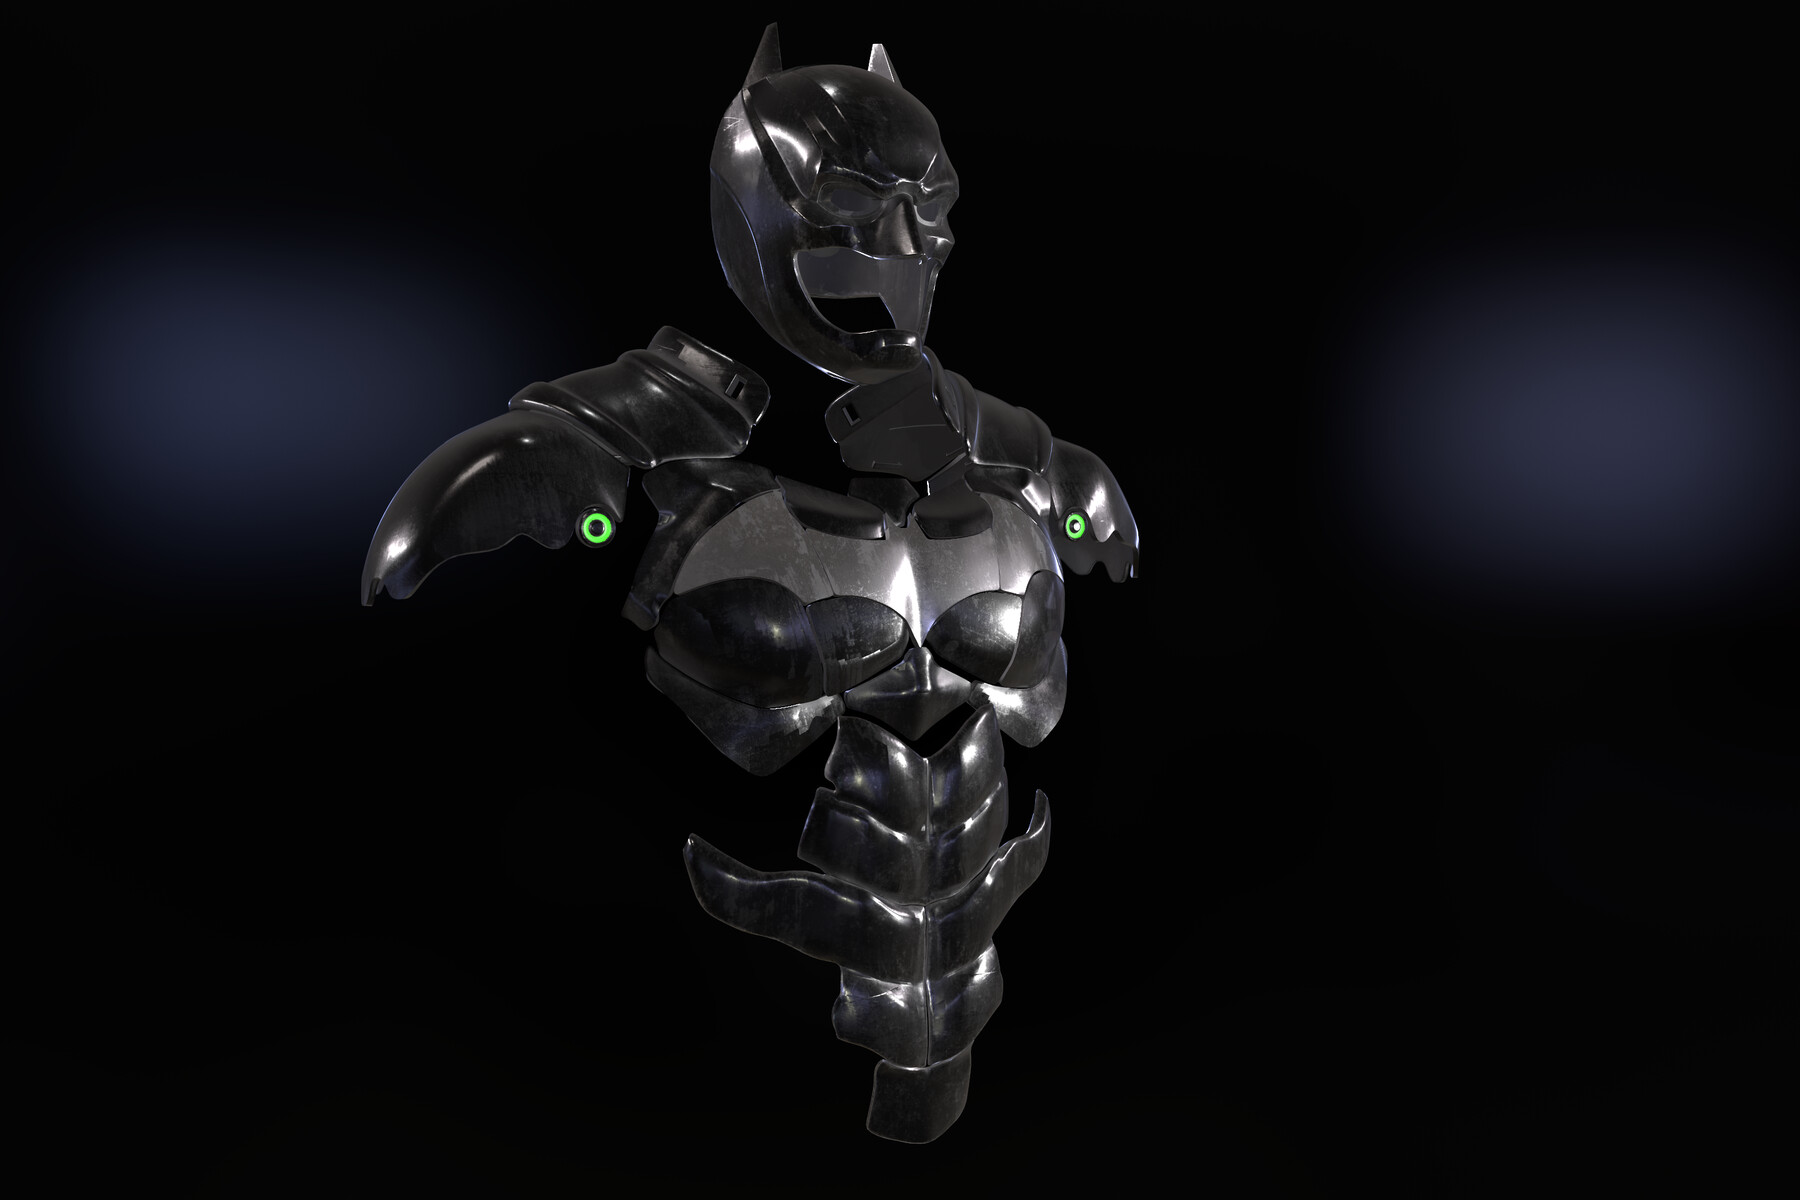 ArtStation - Batman Armor Suit | Resources